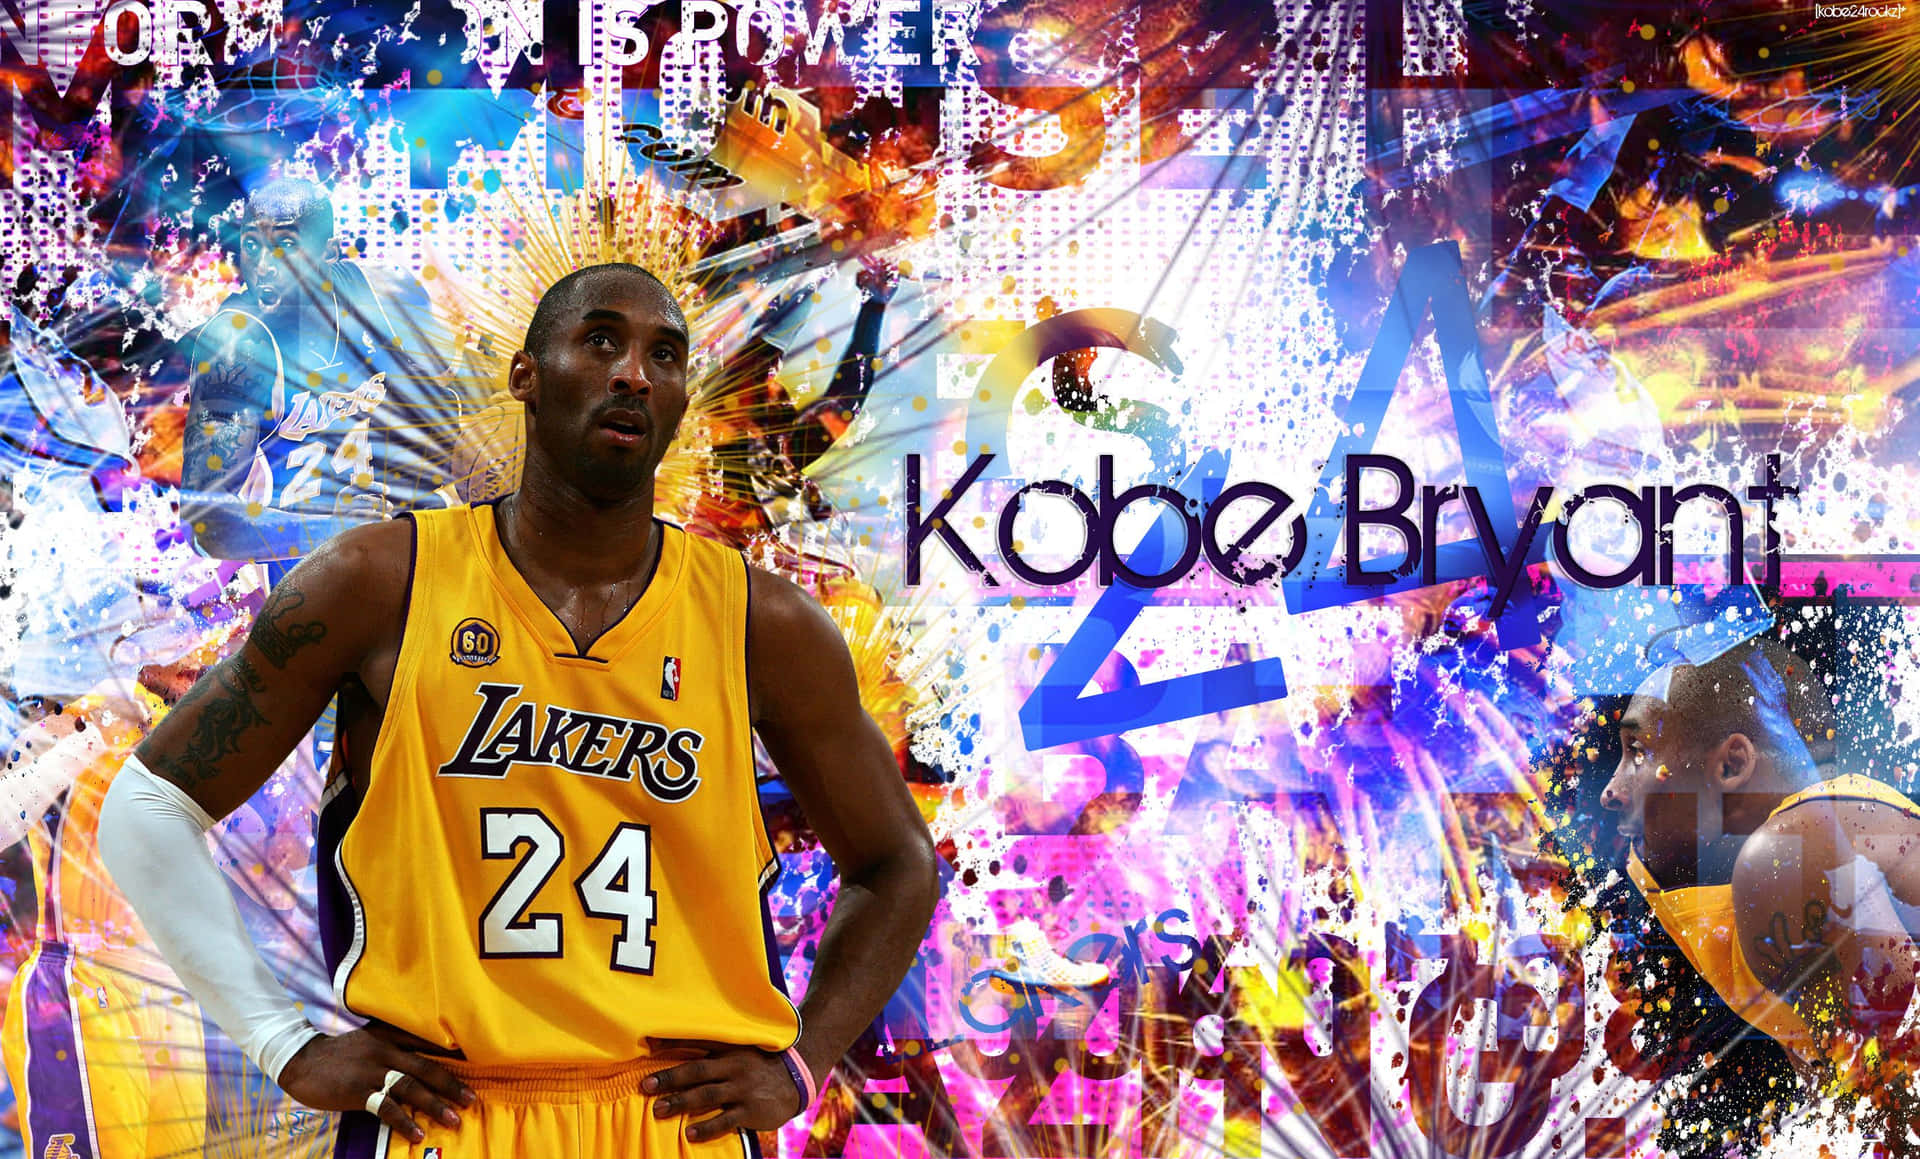 Legendariojugador De Los Lakers De Los Ángeles, Kobe Bryant